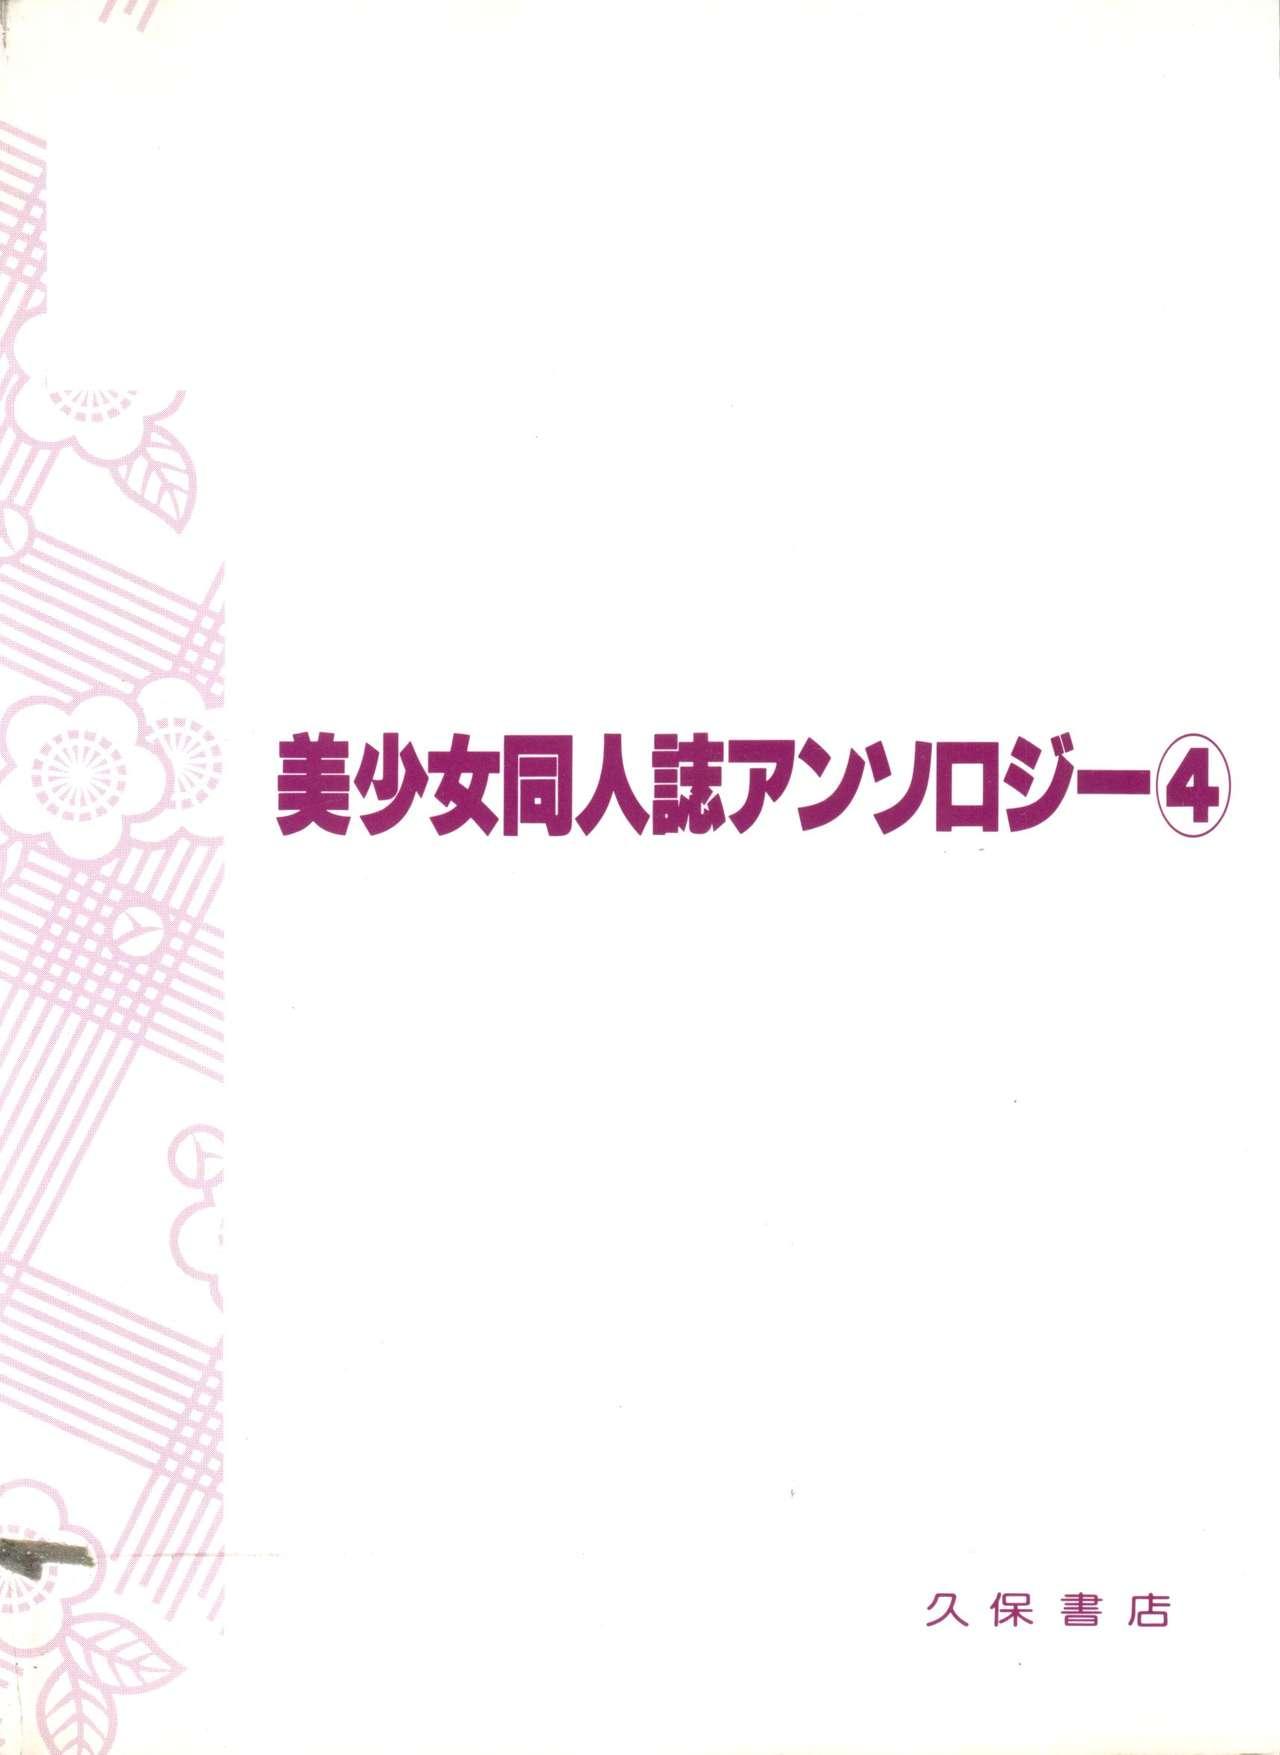 Bishoujo Doujinshi Anthology 4 148